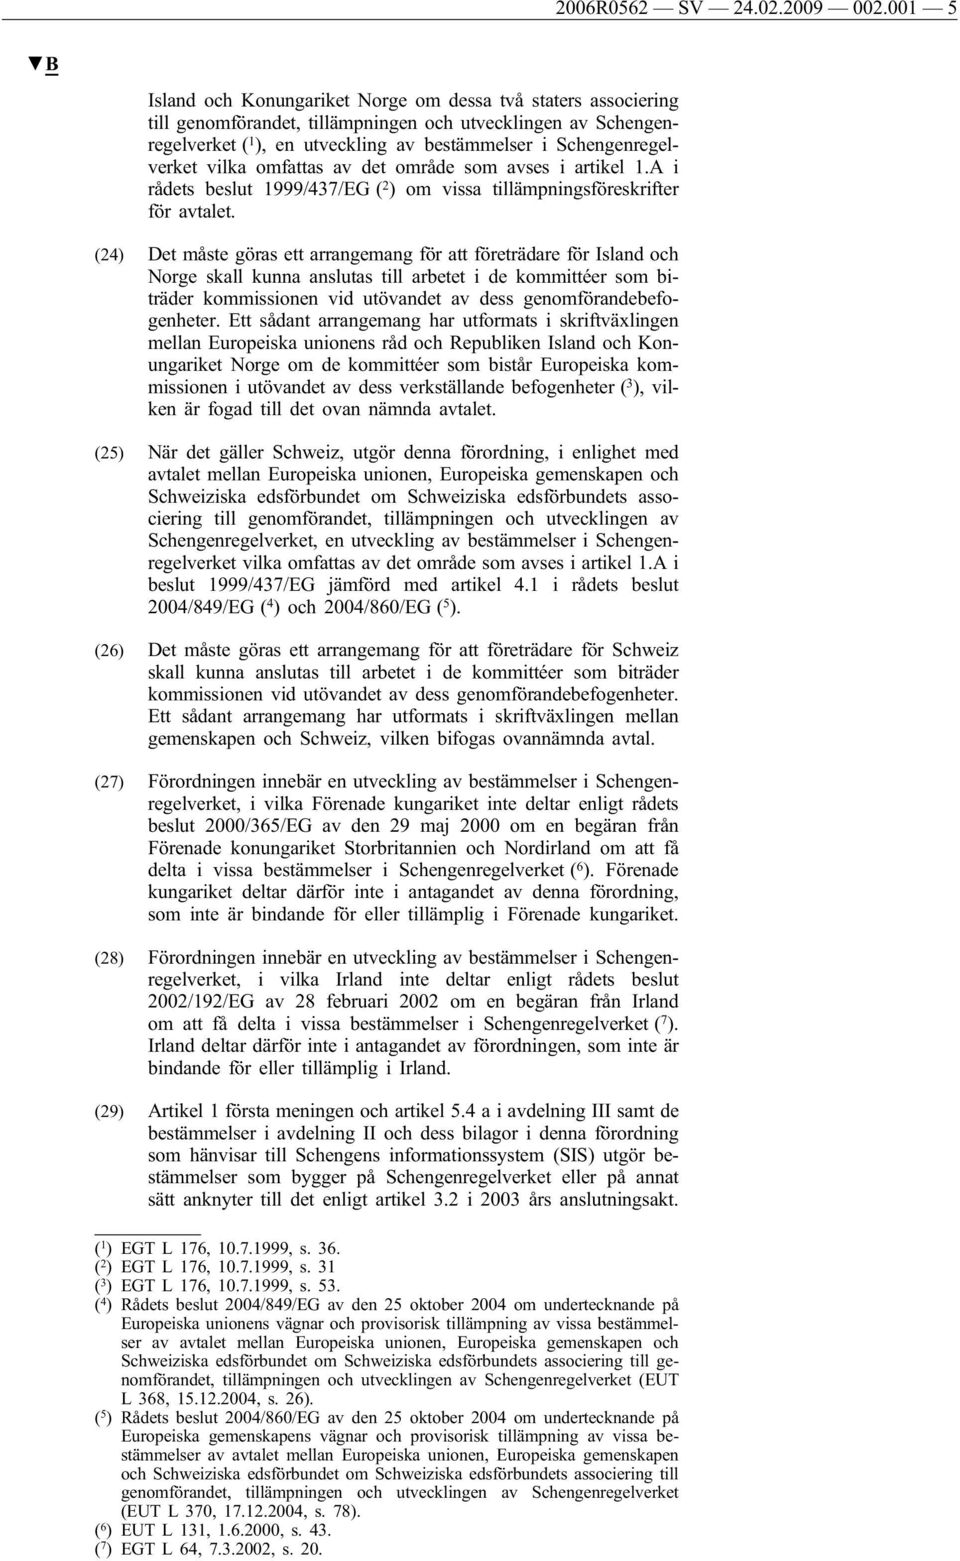 Schengenregelverket vilka omfattas av det område som avses i artikel 1.A i rådets beslut 1999/437/EG ( 2 ) om vissa tillämpningsföreskrifter för avtalet.